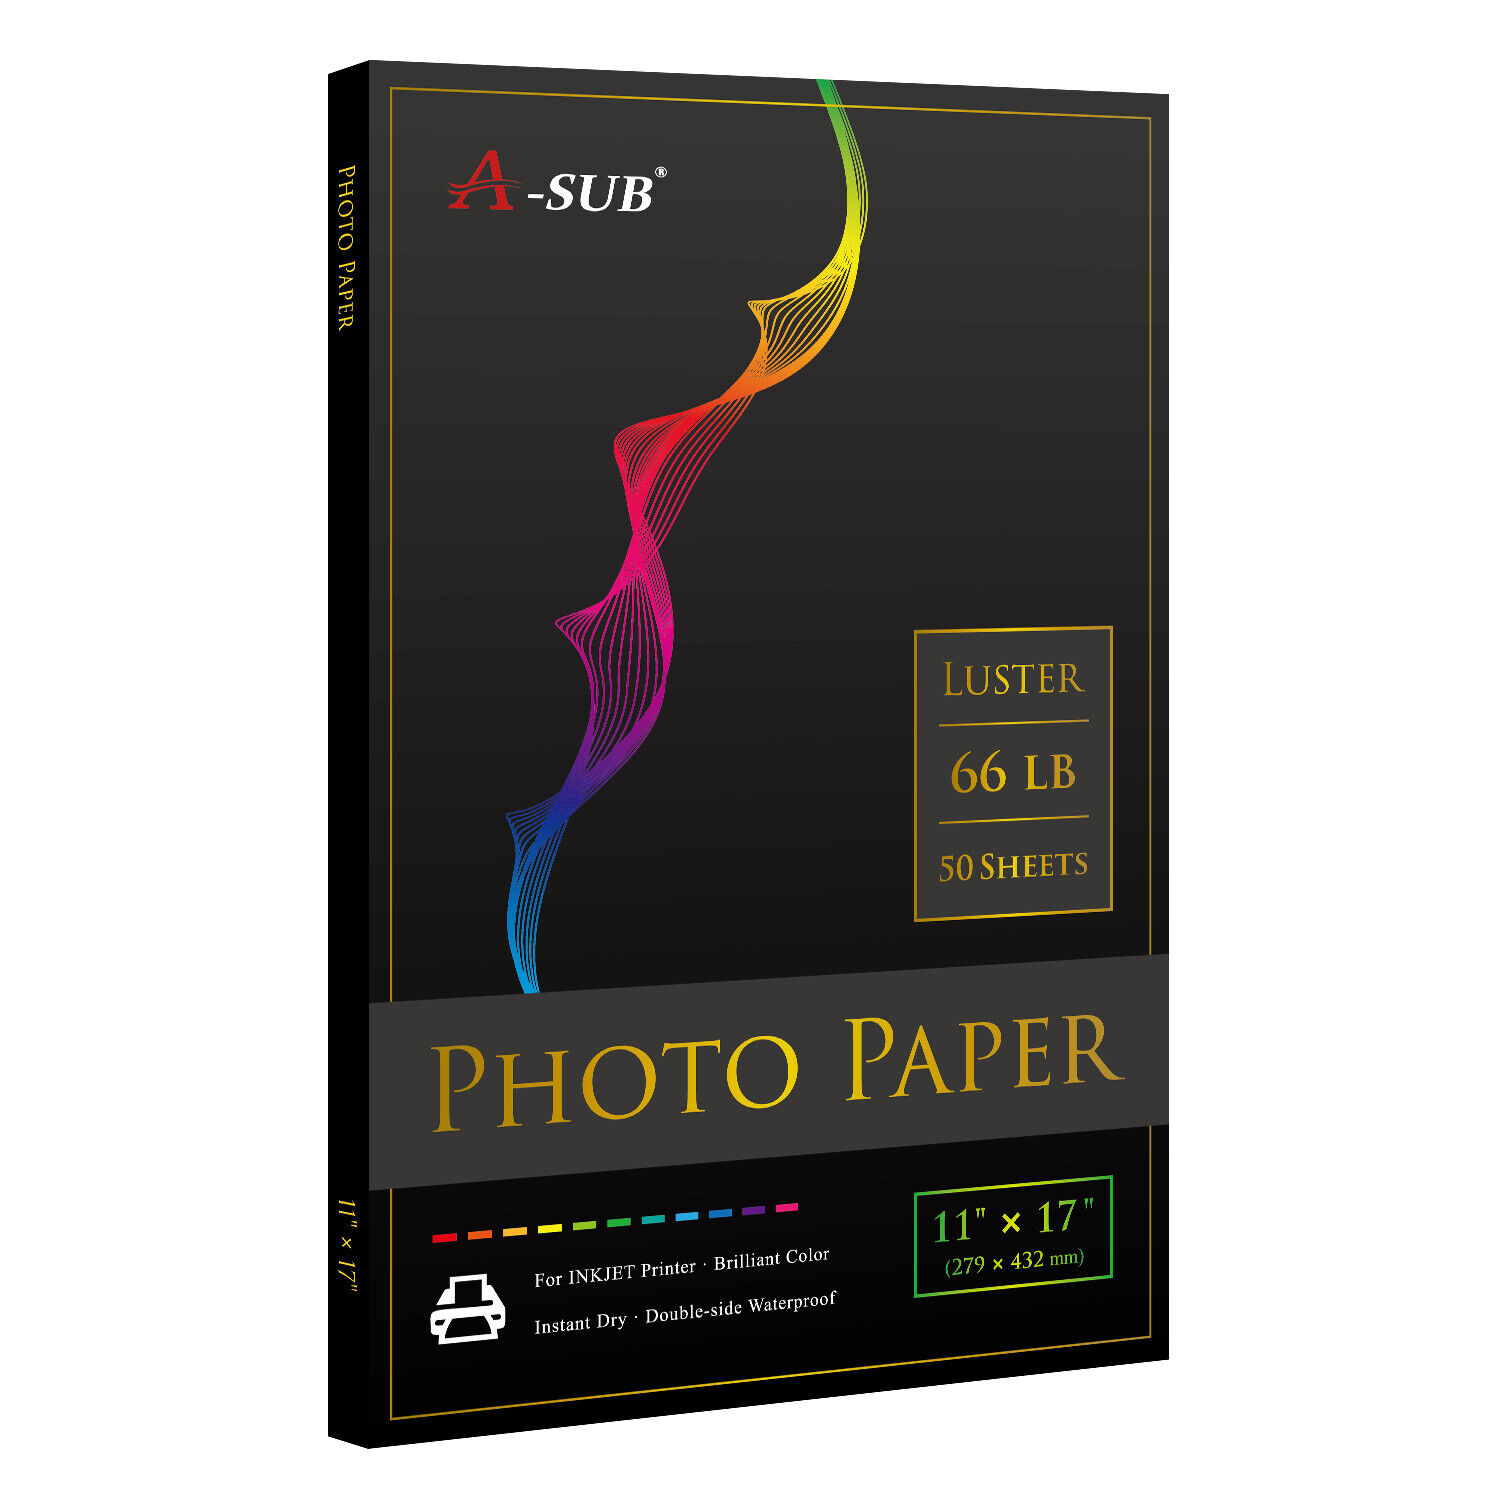 A-SUB Pro Luster Photo Paper 11X17 for Inkjet Printer 250g Semi Gloss 50 PK 66lb